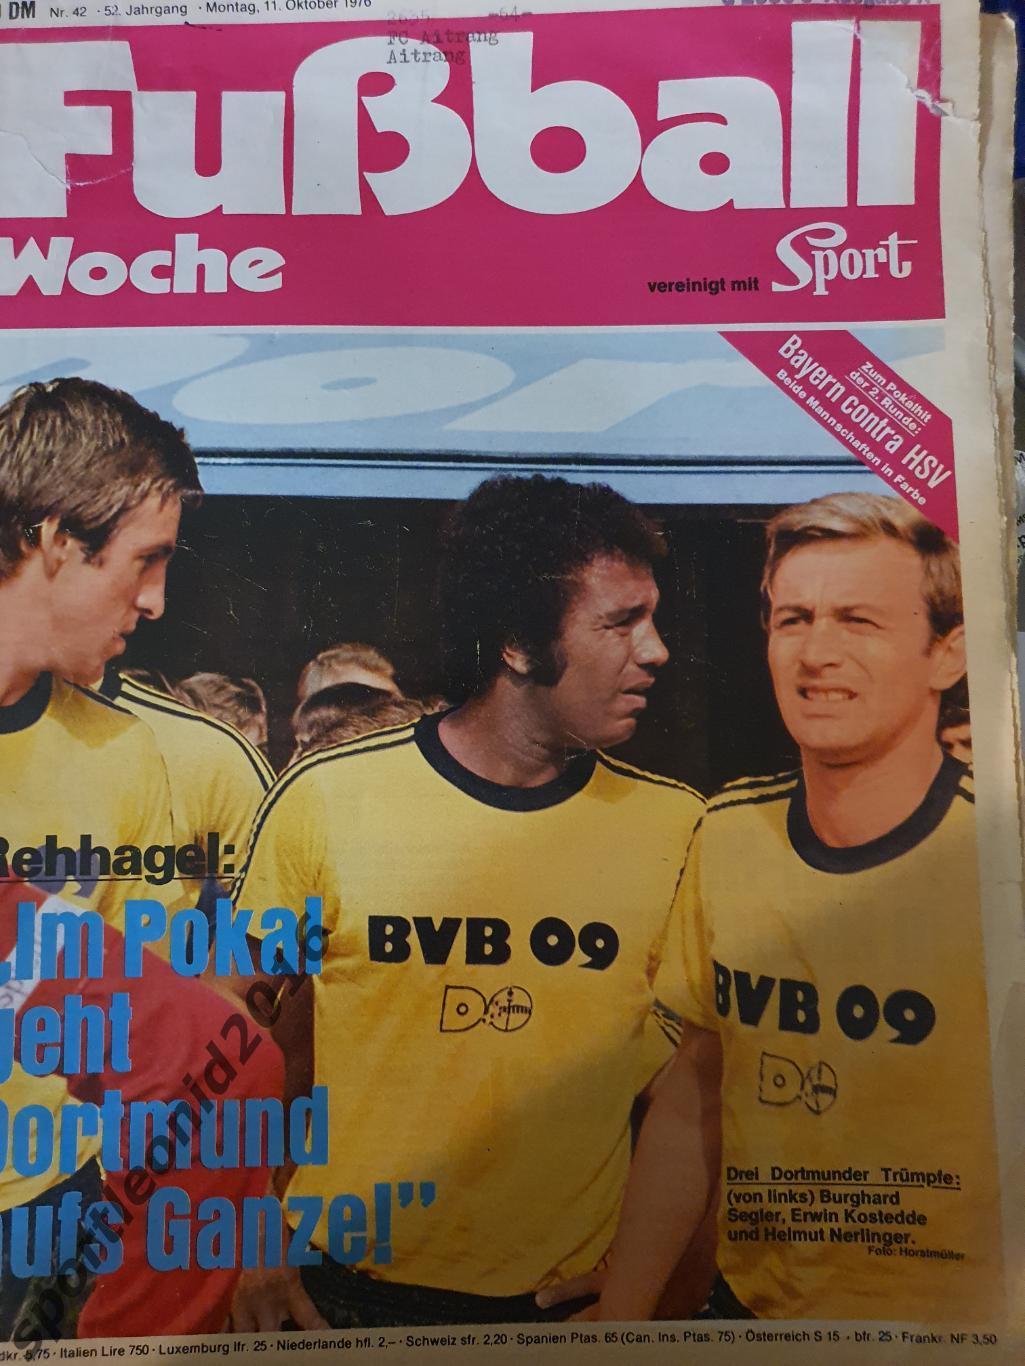 Fussball Woche 42/1976 2